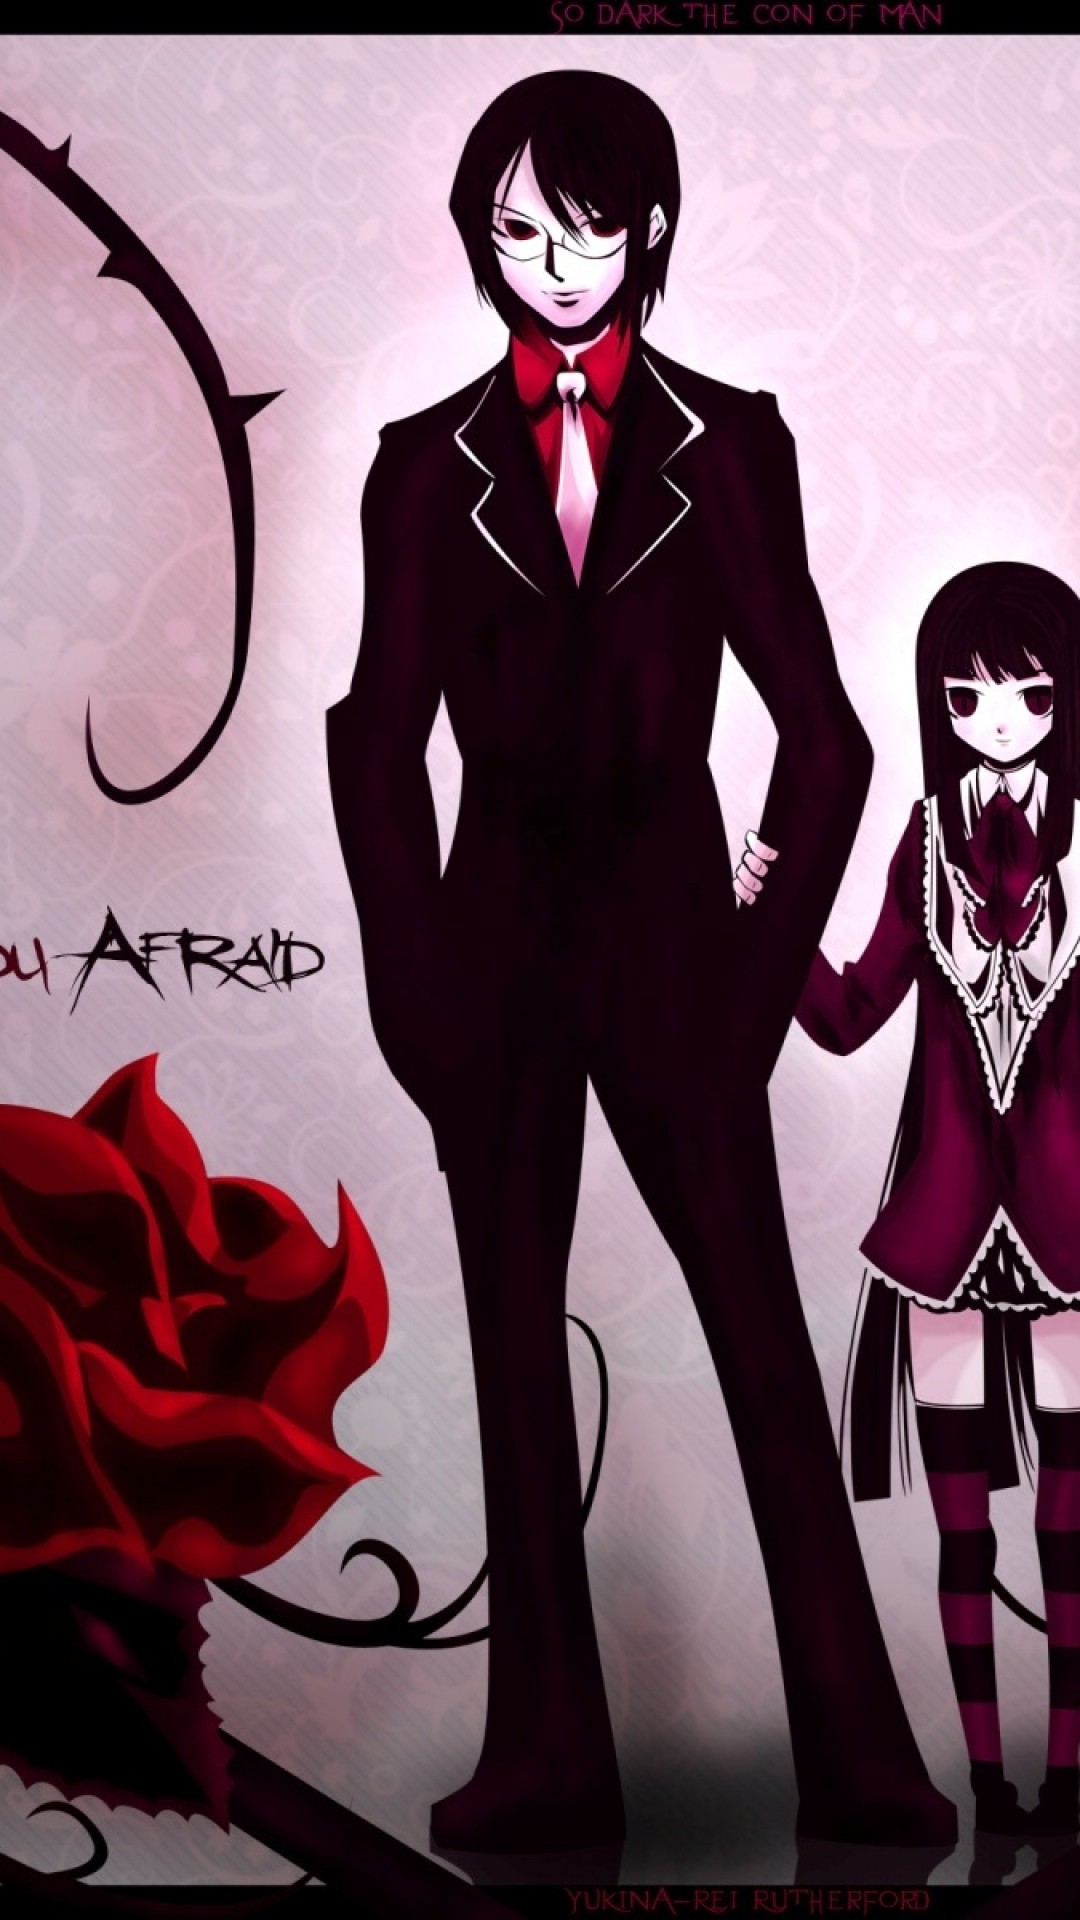 Wallpaper Boy, Dark Anime, Girl, Rose, Background - Anime Dark Background  For Girls And Boys - 1080x1920 Wallpaper 